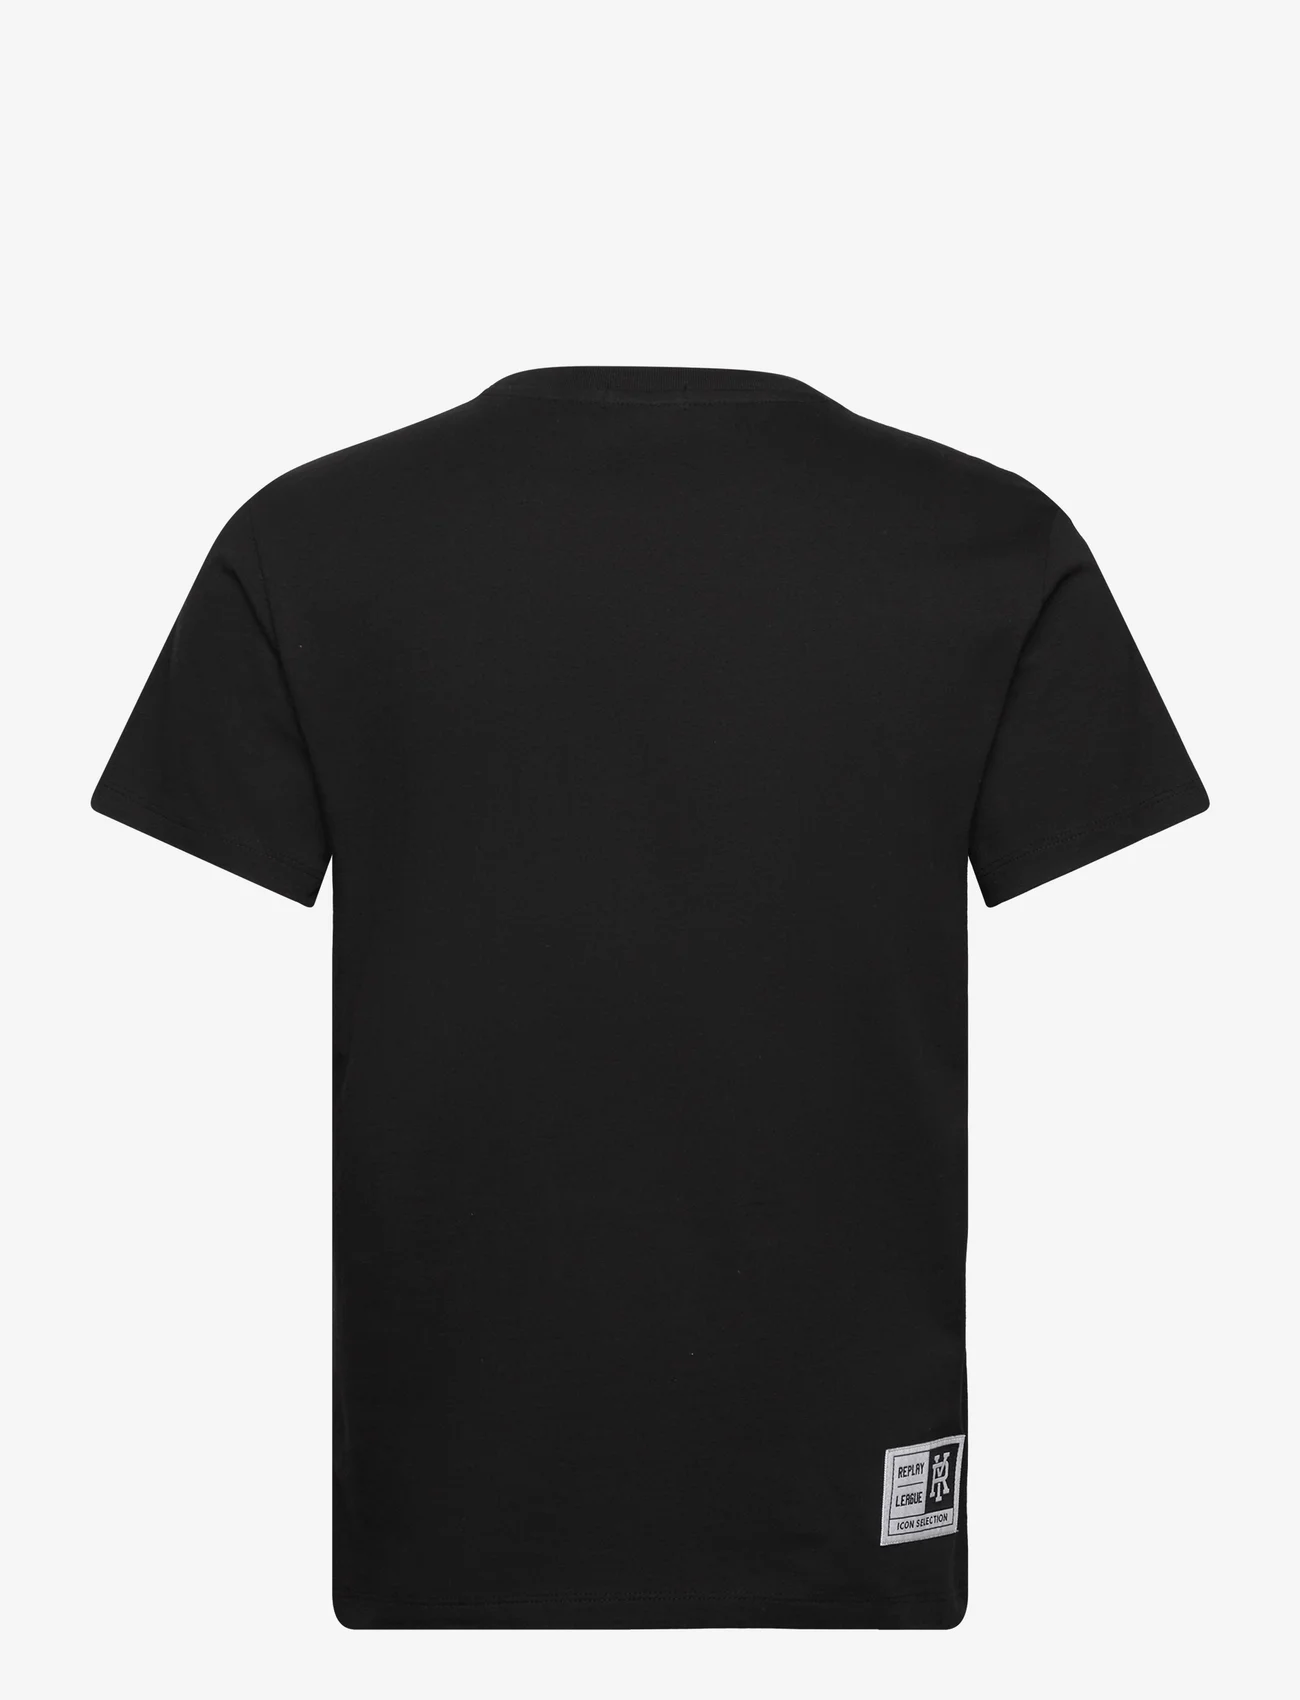 Replay - T-Shirt REGULAR - lühikeste varrukatega t-särgid - black - 1